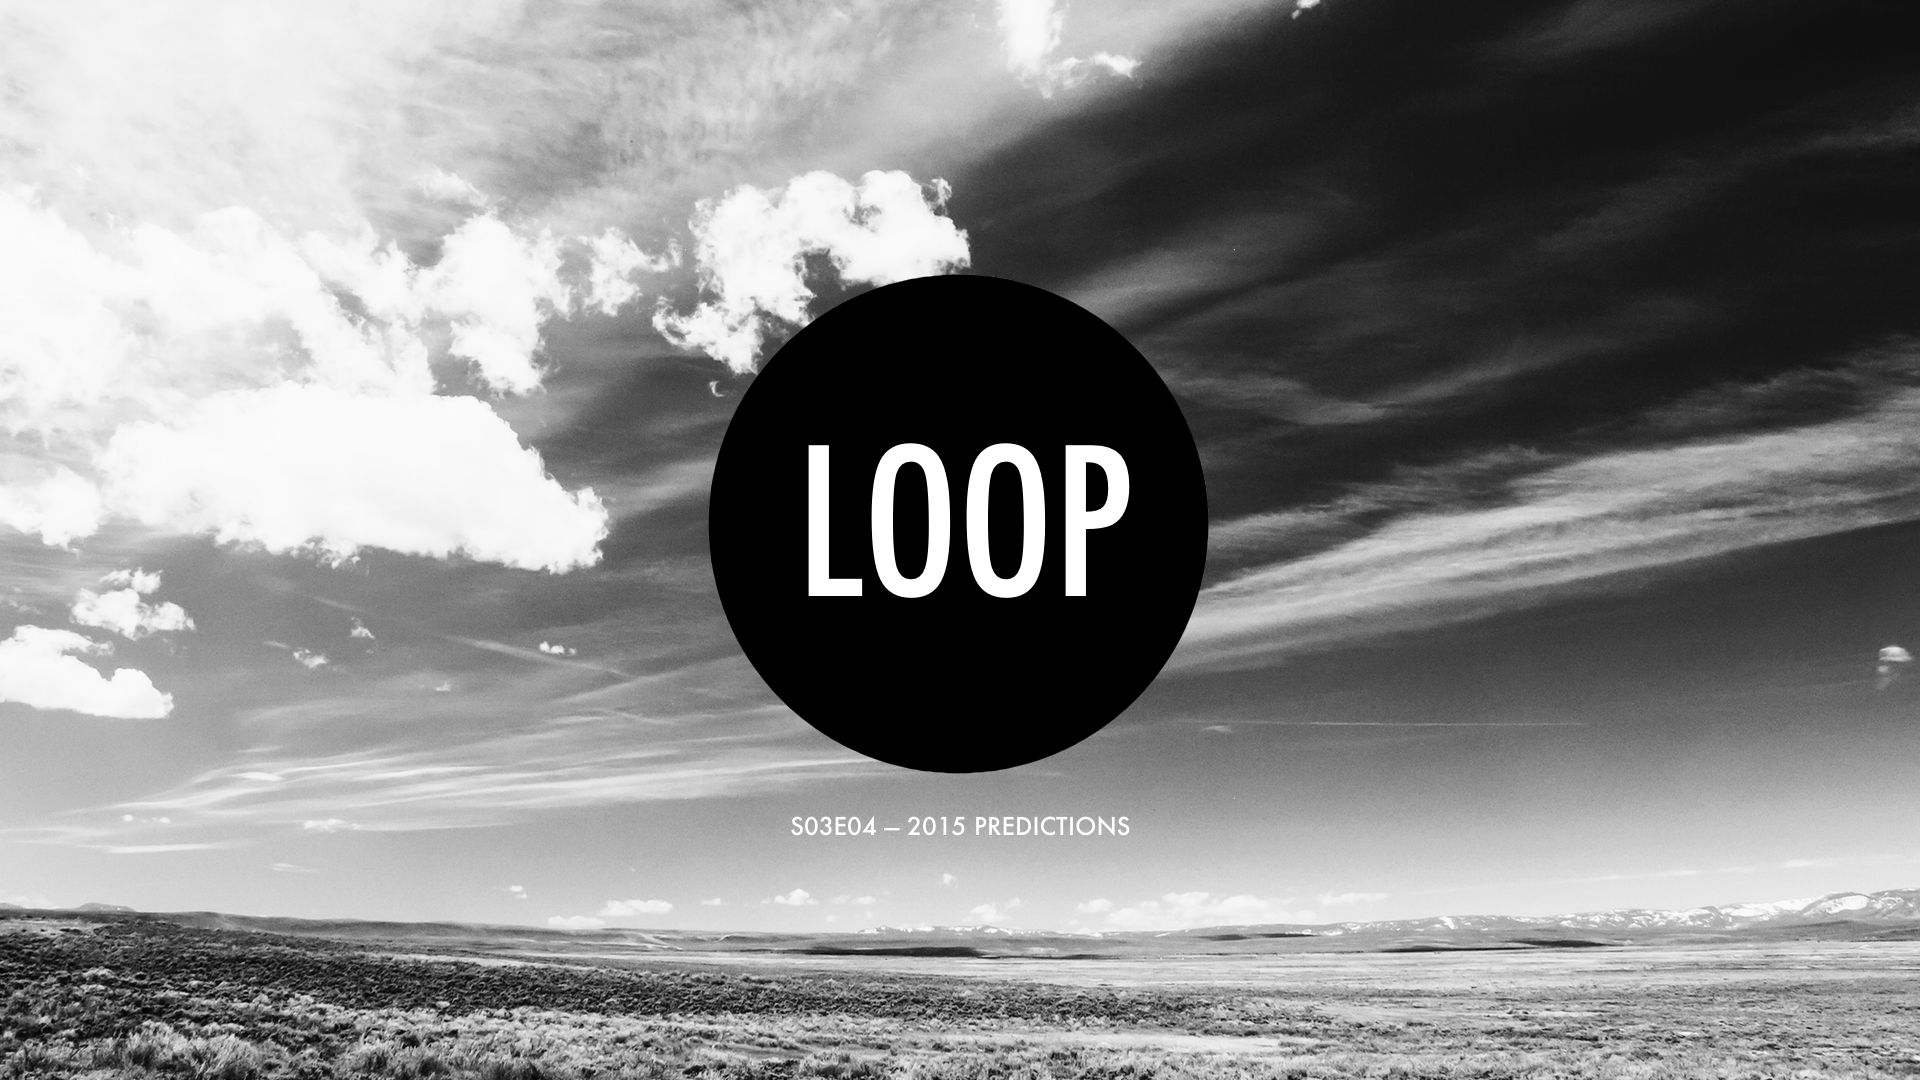 S03E04 2015 Predictions — The Digital Loop